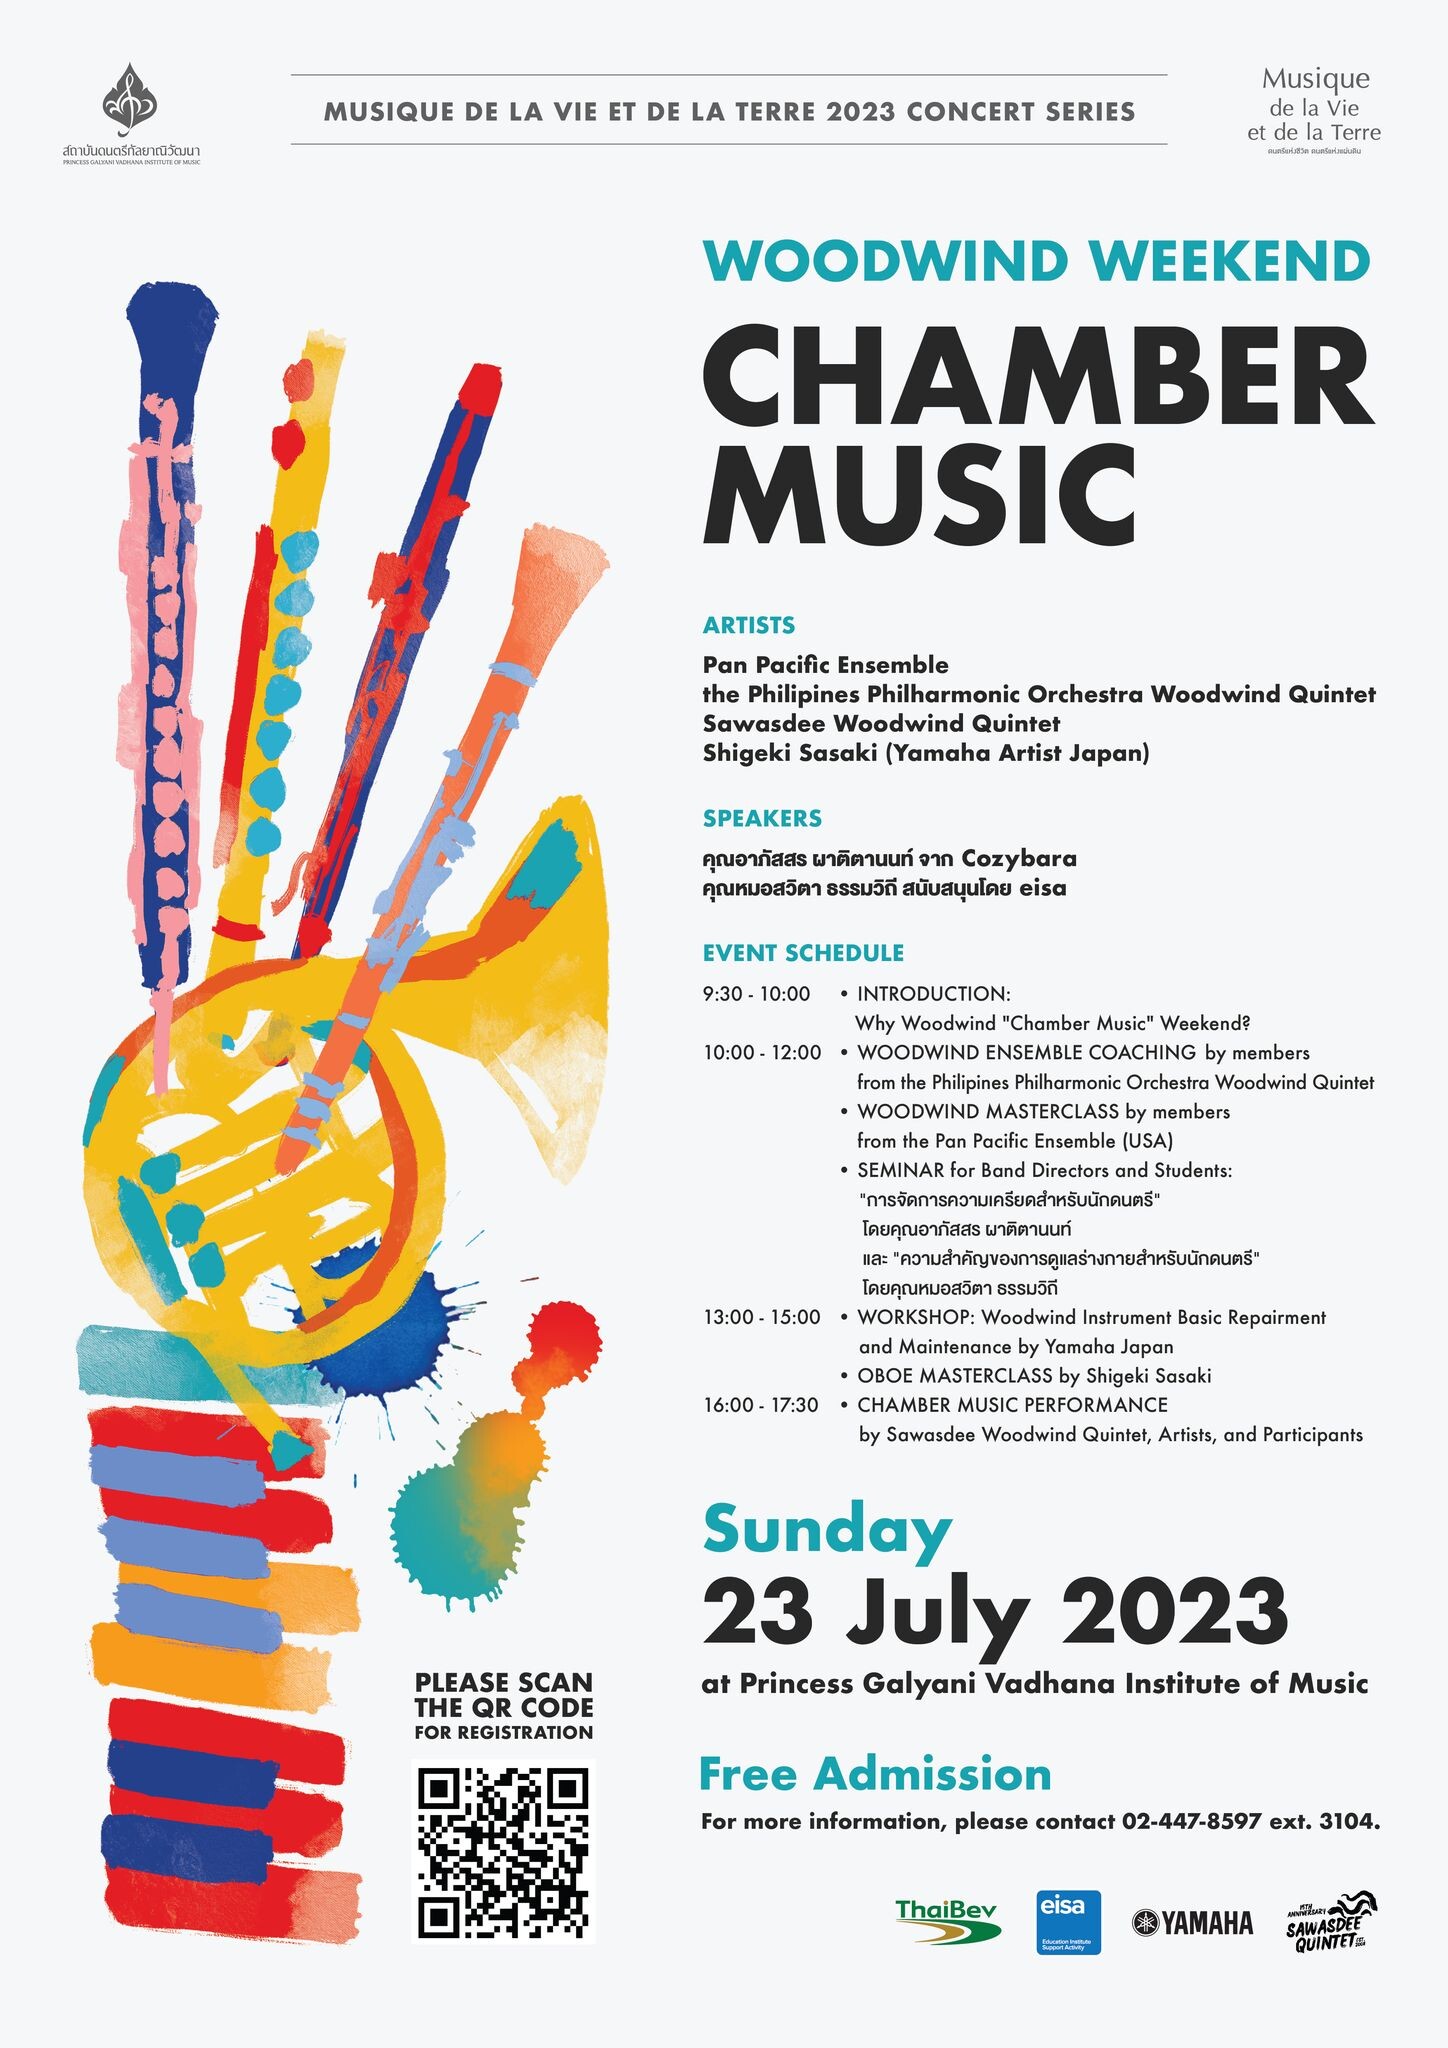 สถาบันดนตรีกัลยาณิวัฒนา จัดกิจกรรม Woodwind "Chamber Music" Weekend สมัครเข้าร่วมงาน...ฟรี